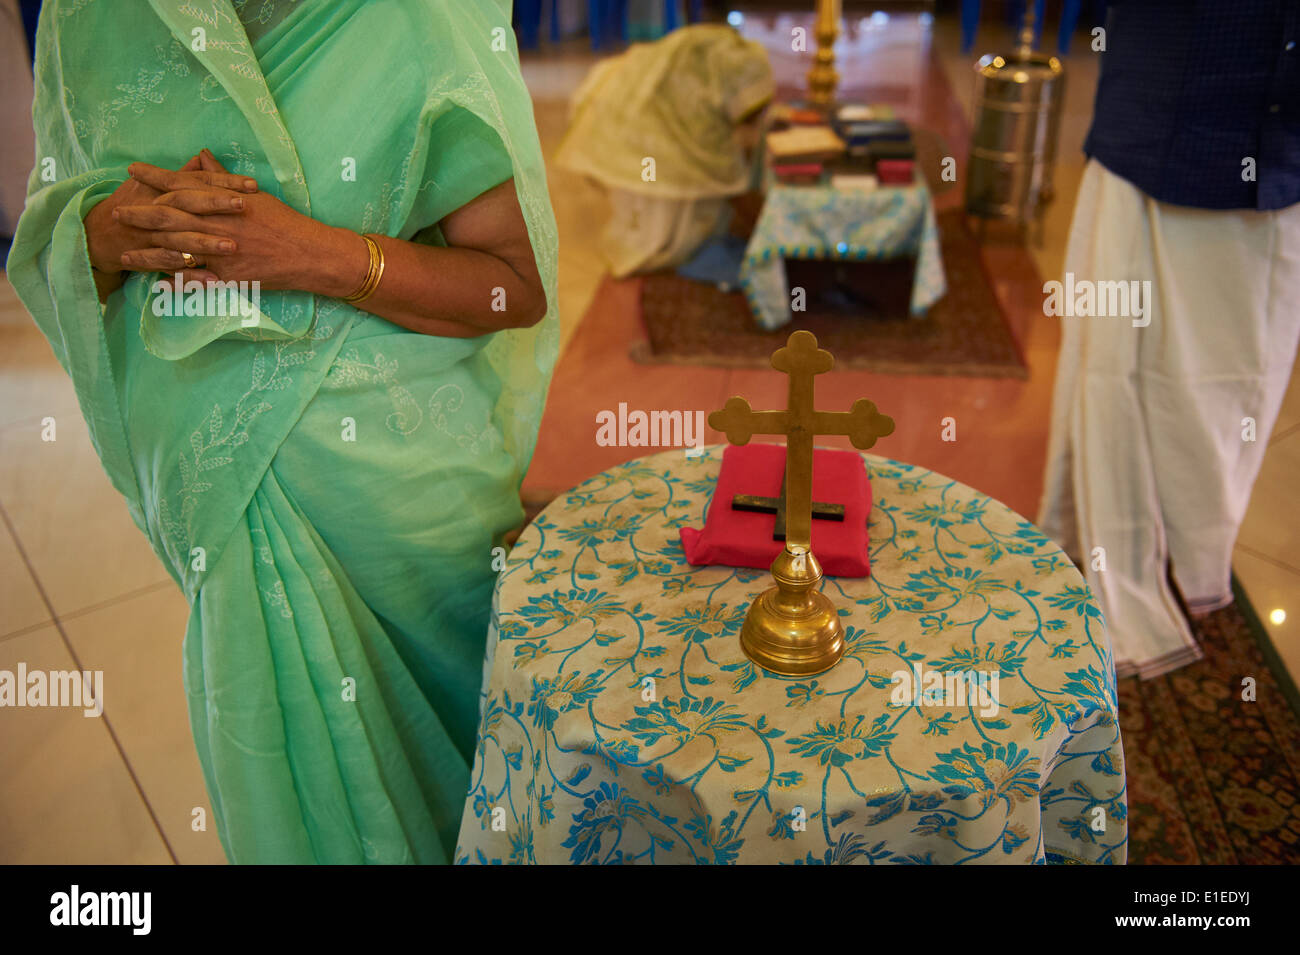 India Kerala State, Thrissur, la santa messa presso la chiesa cattolica caldea Foto Stock